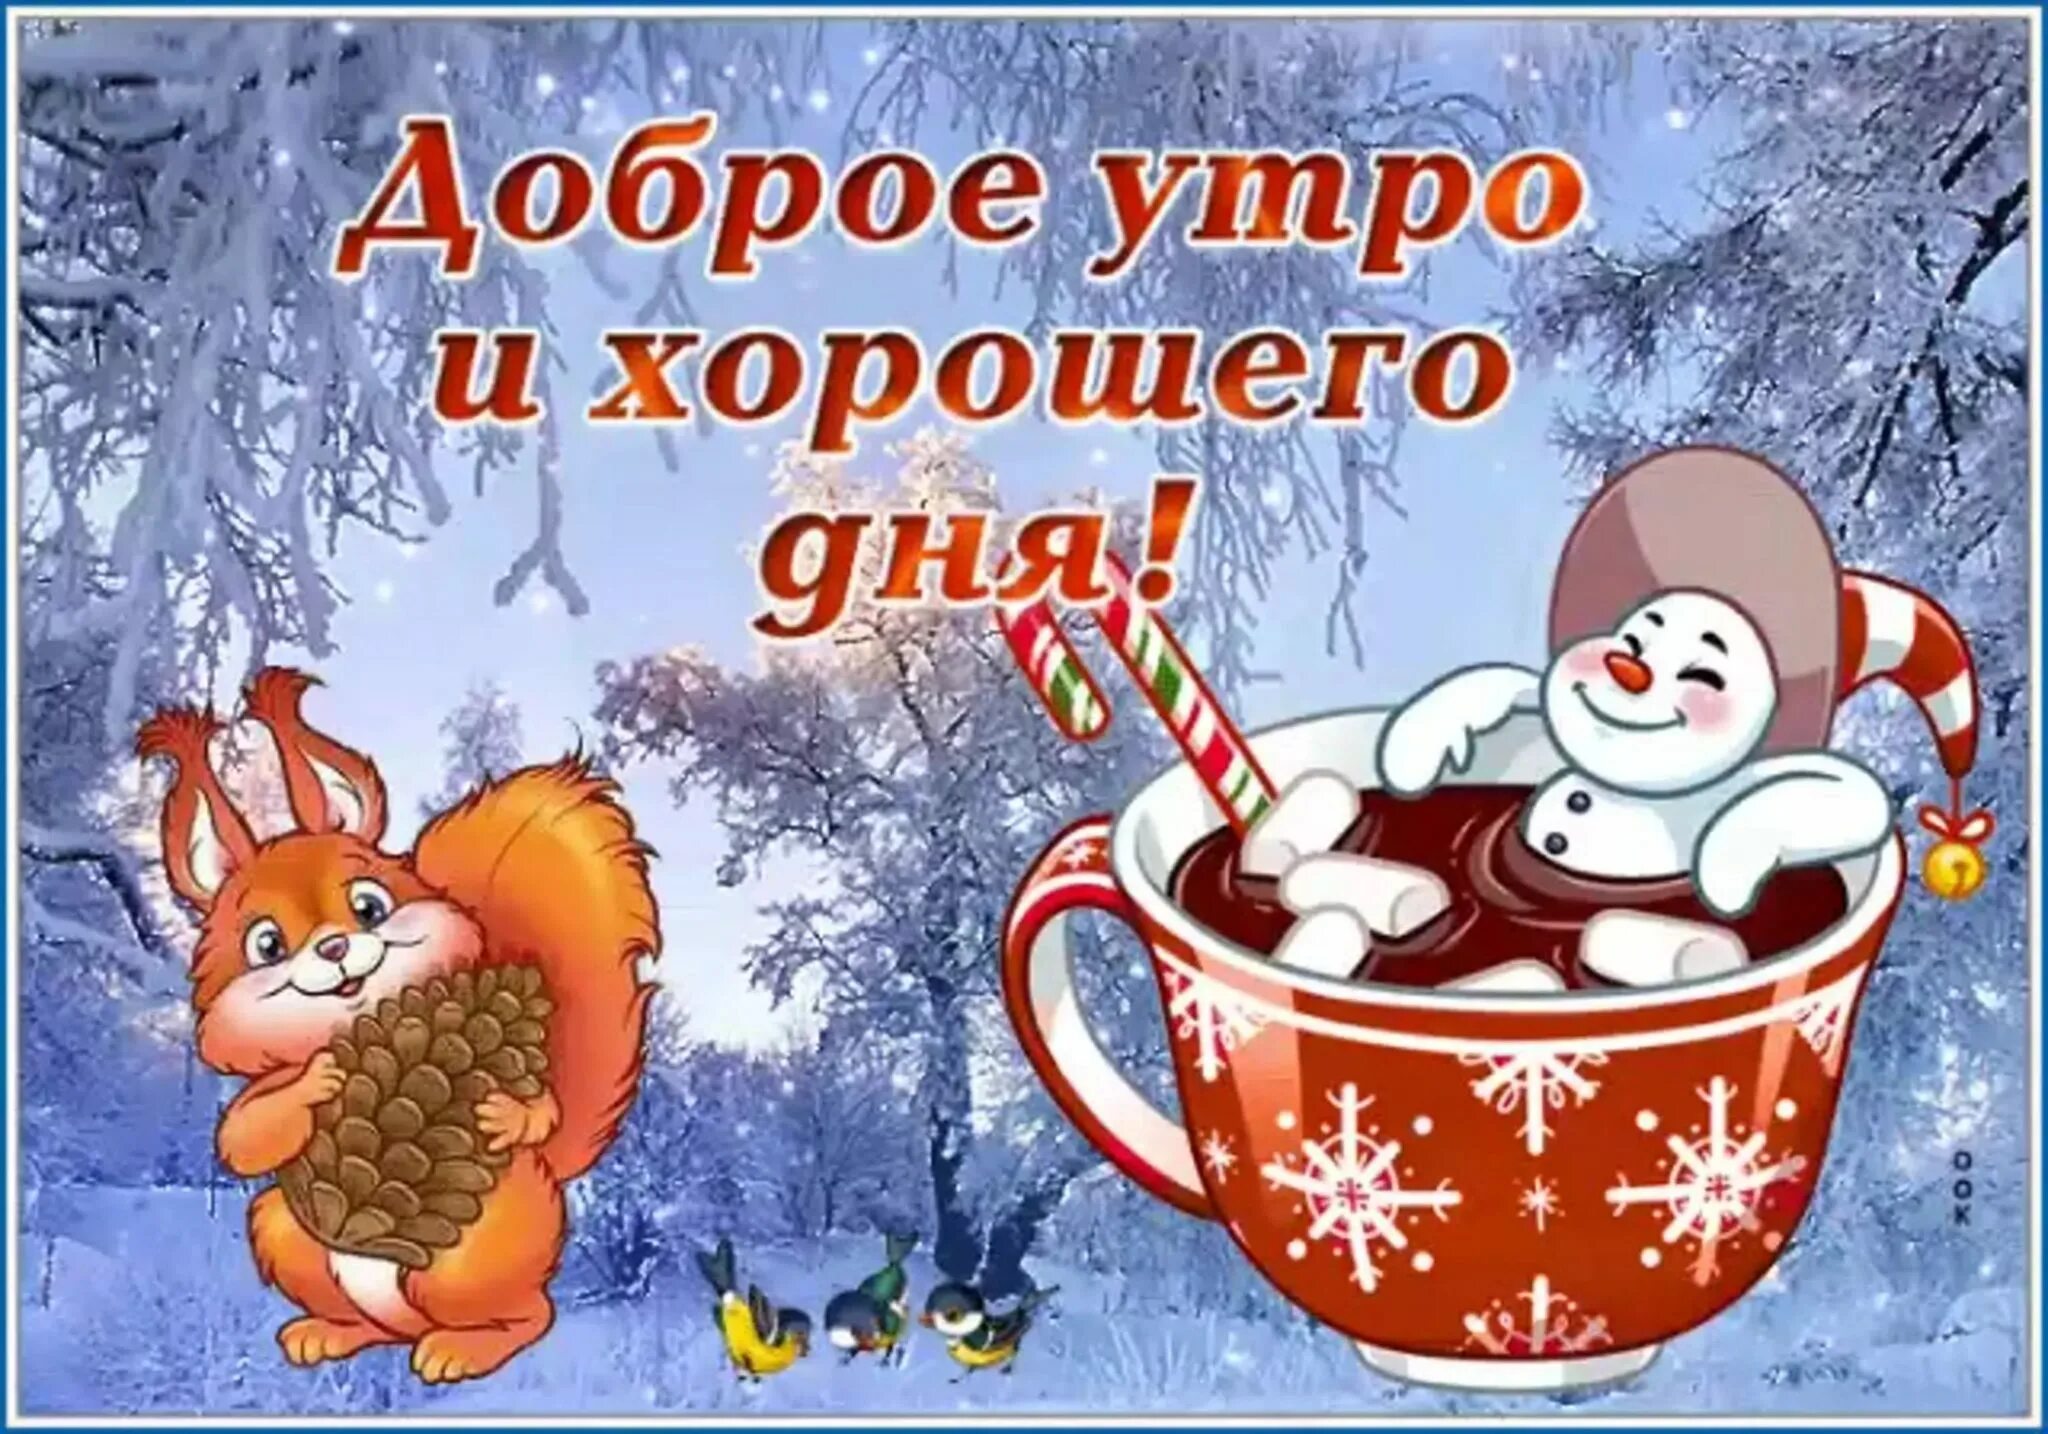 С добрым зимним утром. Пожелания с добрым утром зимние. Доброго зимнего утра и хорошего дня. С добрым зимним утром и хорошим днём с пожеланиями. Добрый позитивный день зимний